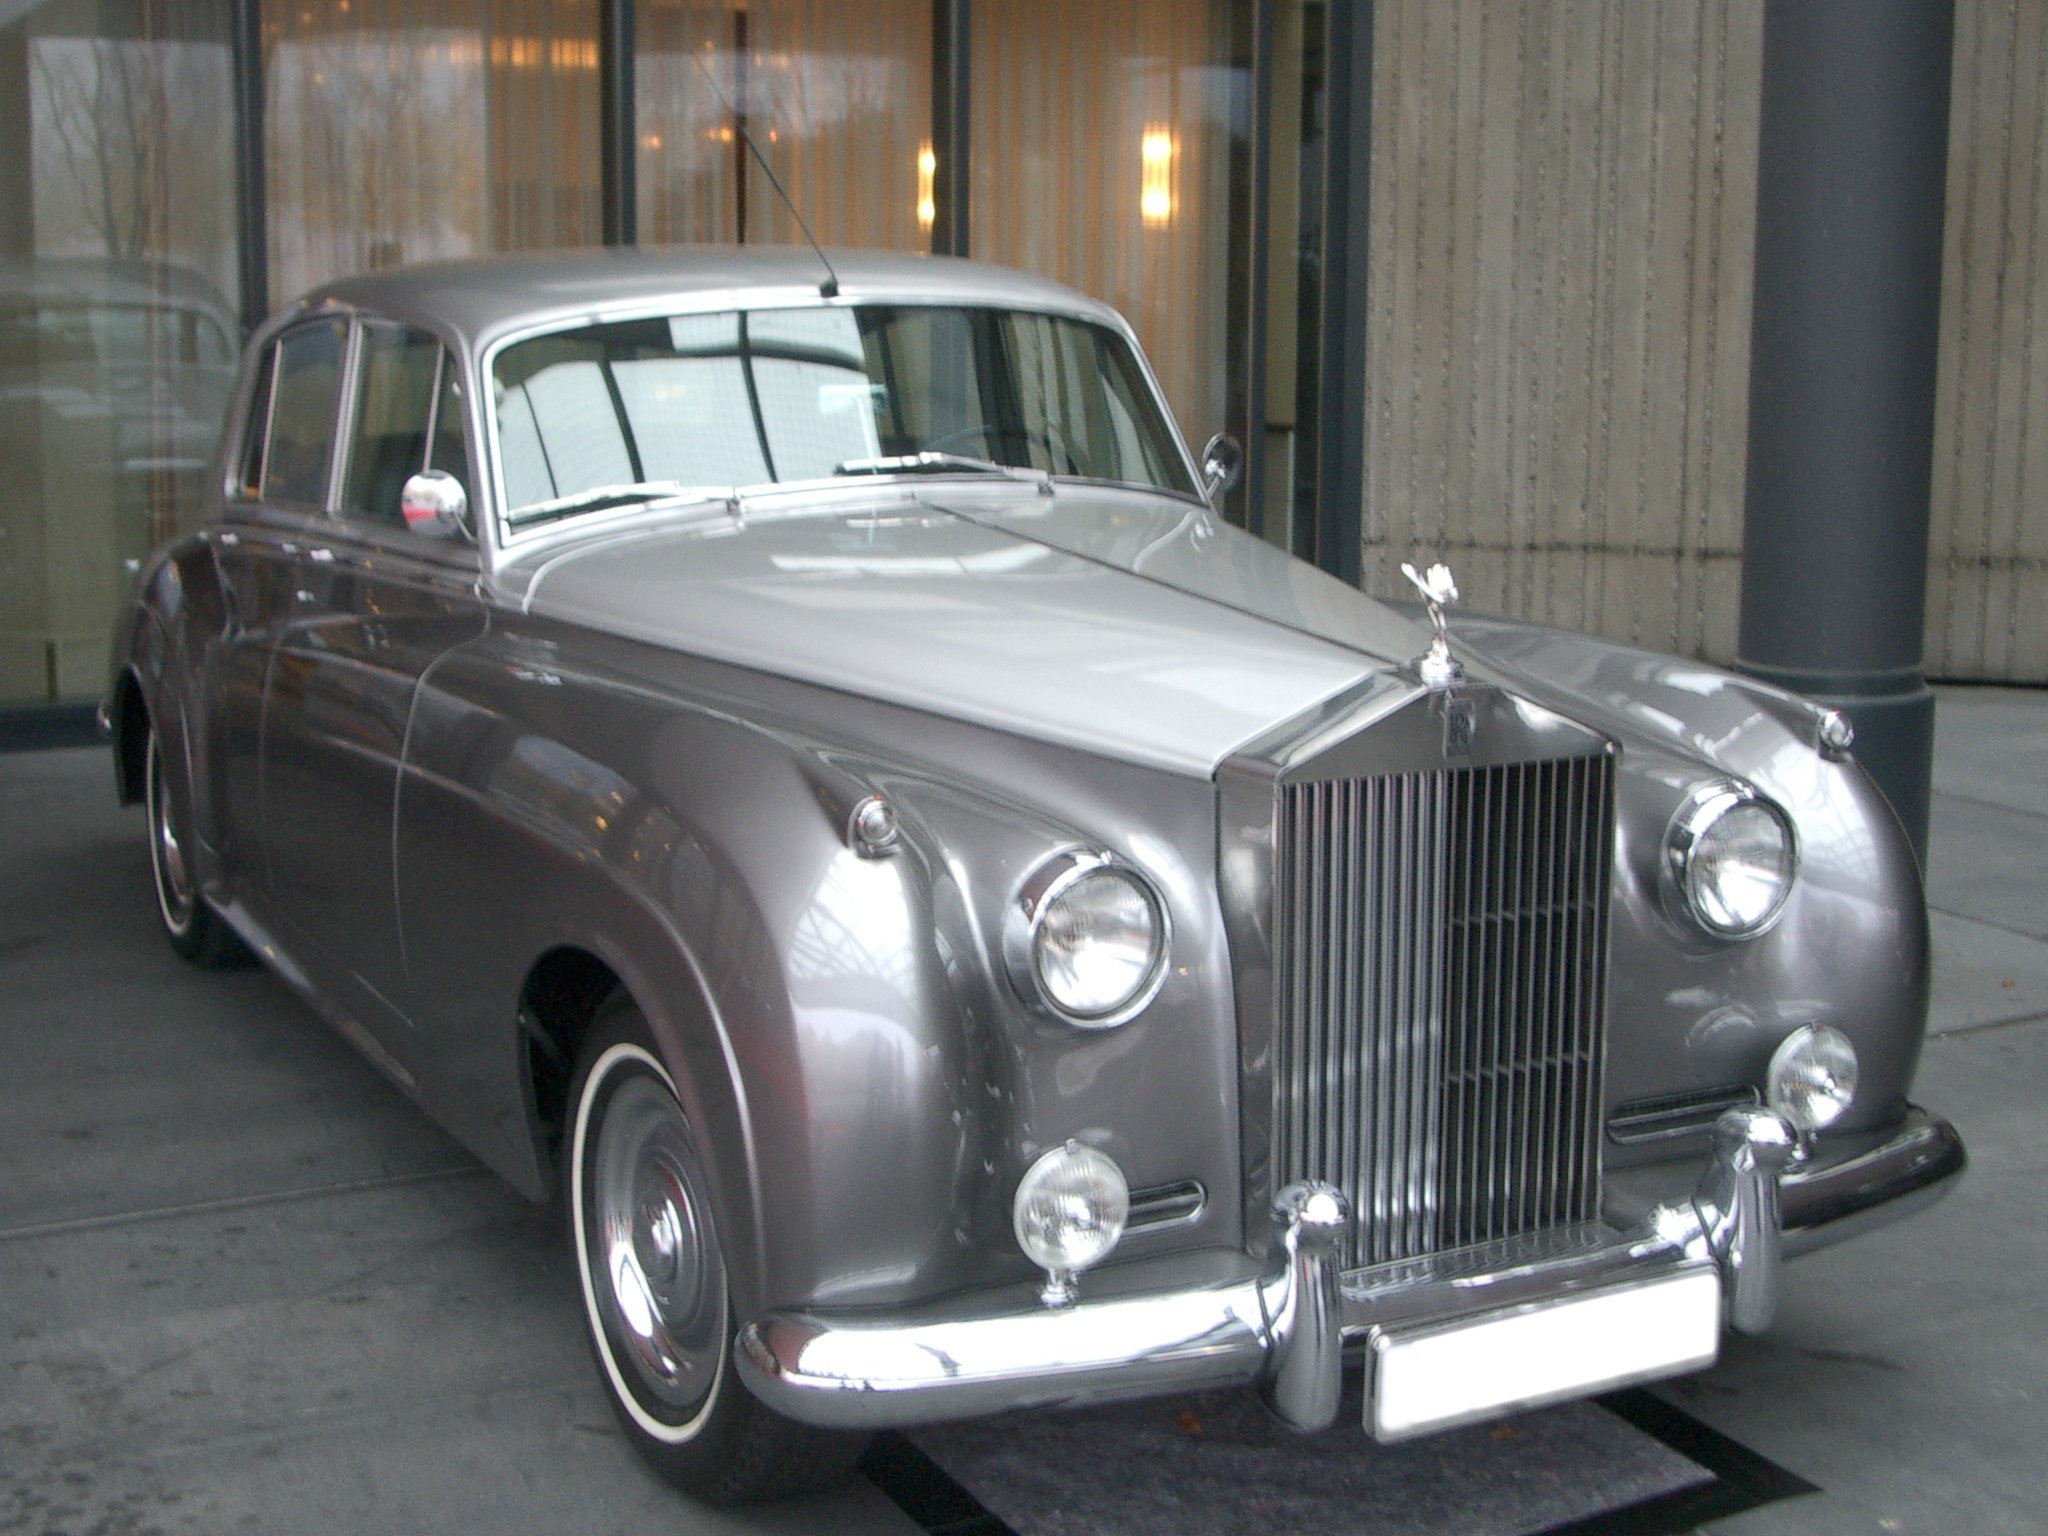 The Rolls-Royce Silver Cloud